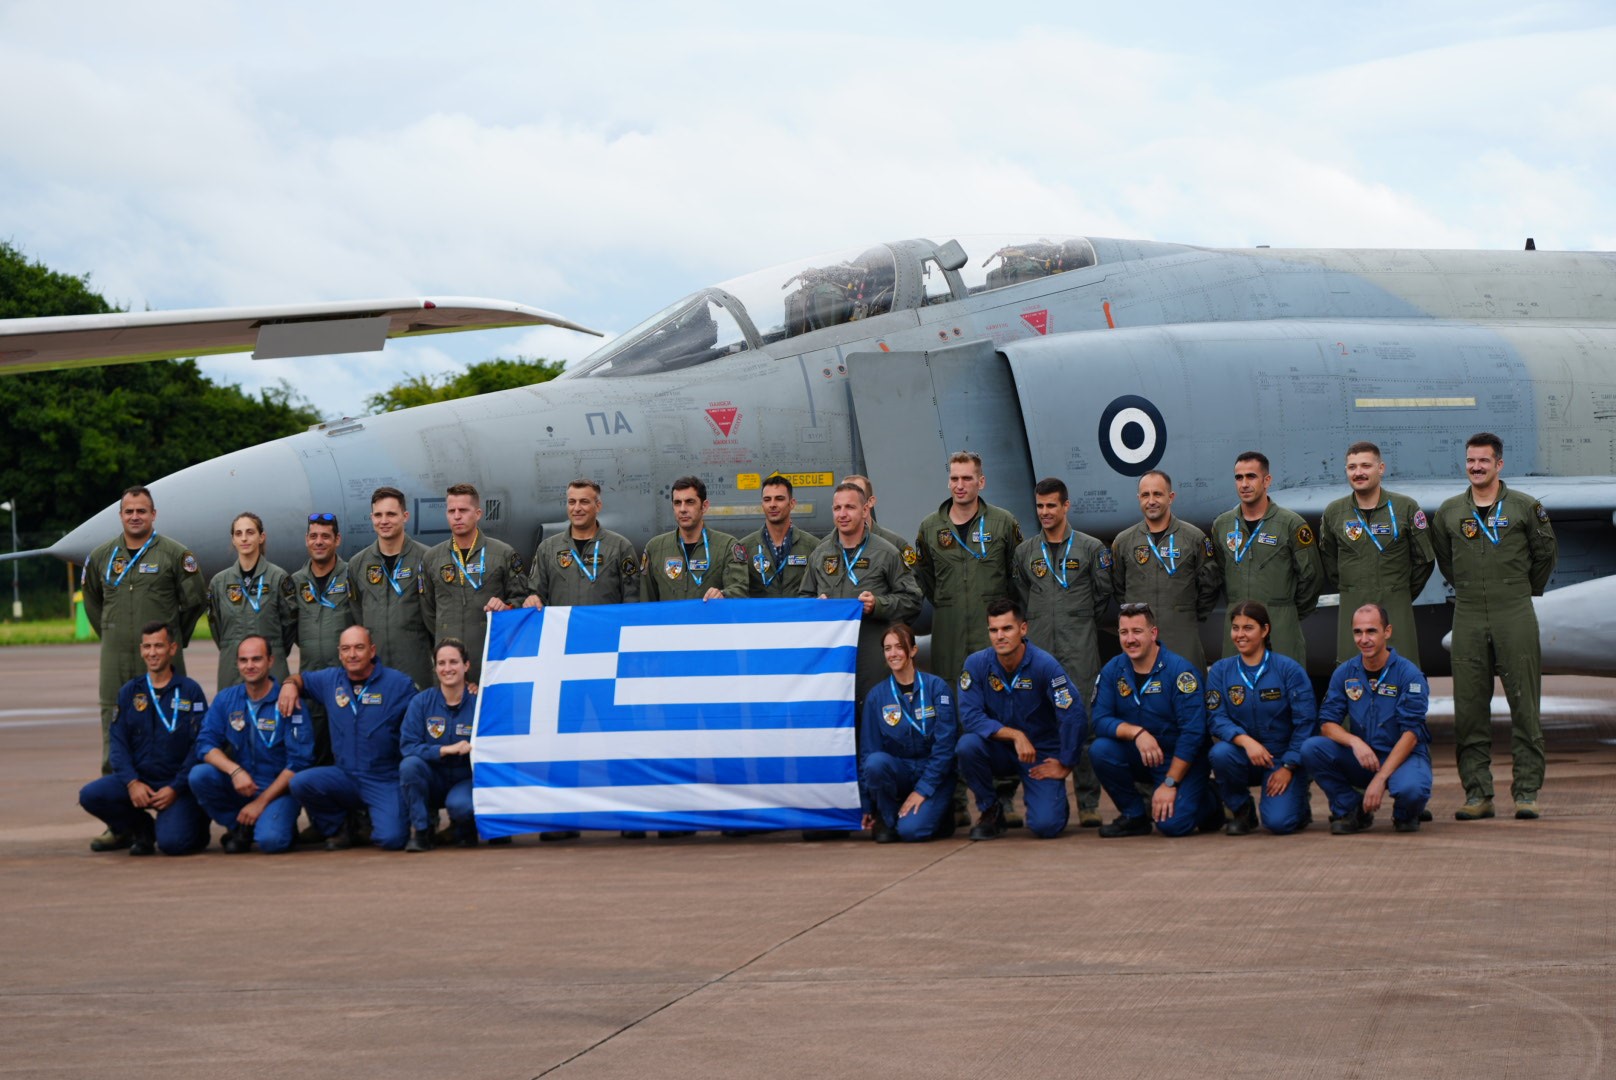 Τα ελληνικά Phantom και τα F-16 της Πολεμικής Αεροπορίας μάγεψαν 200.000 θεατές  στη Βρετανία